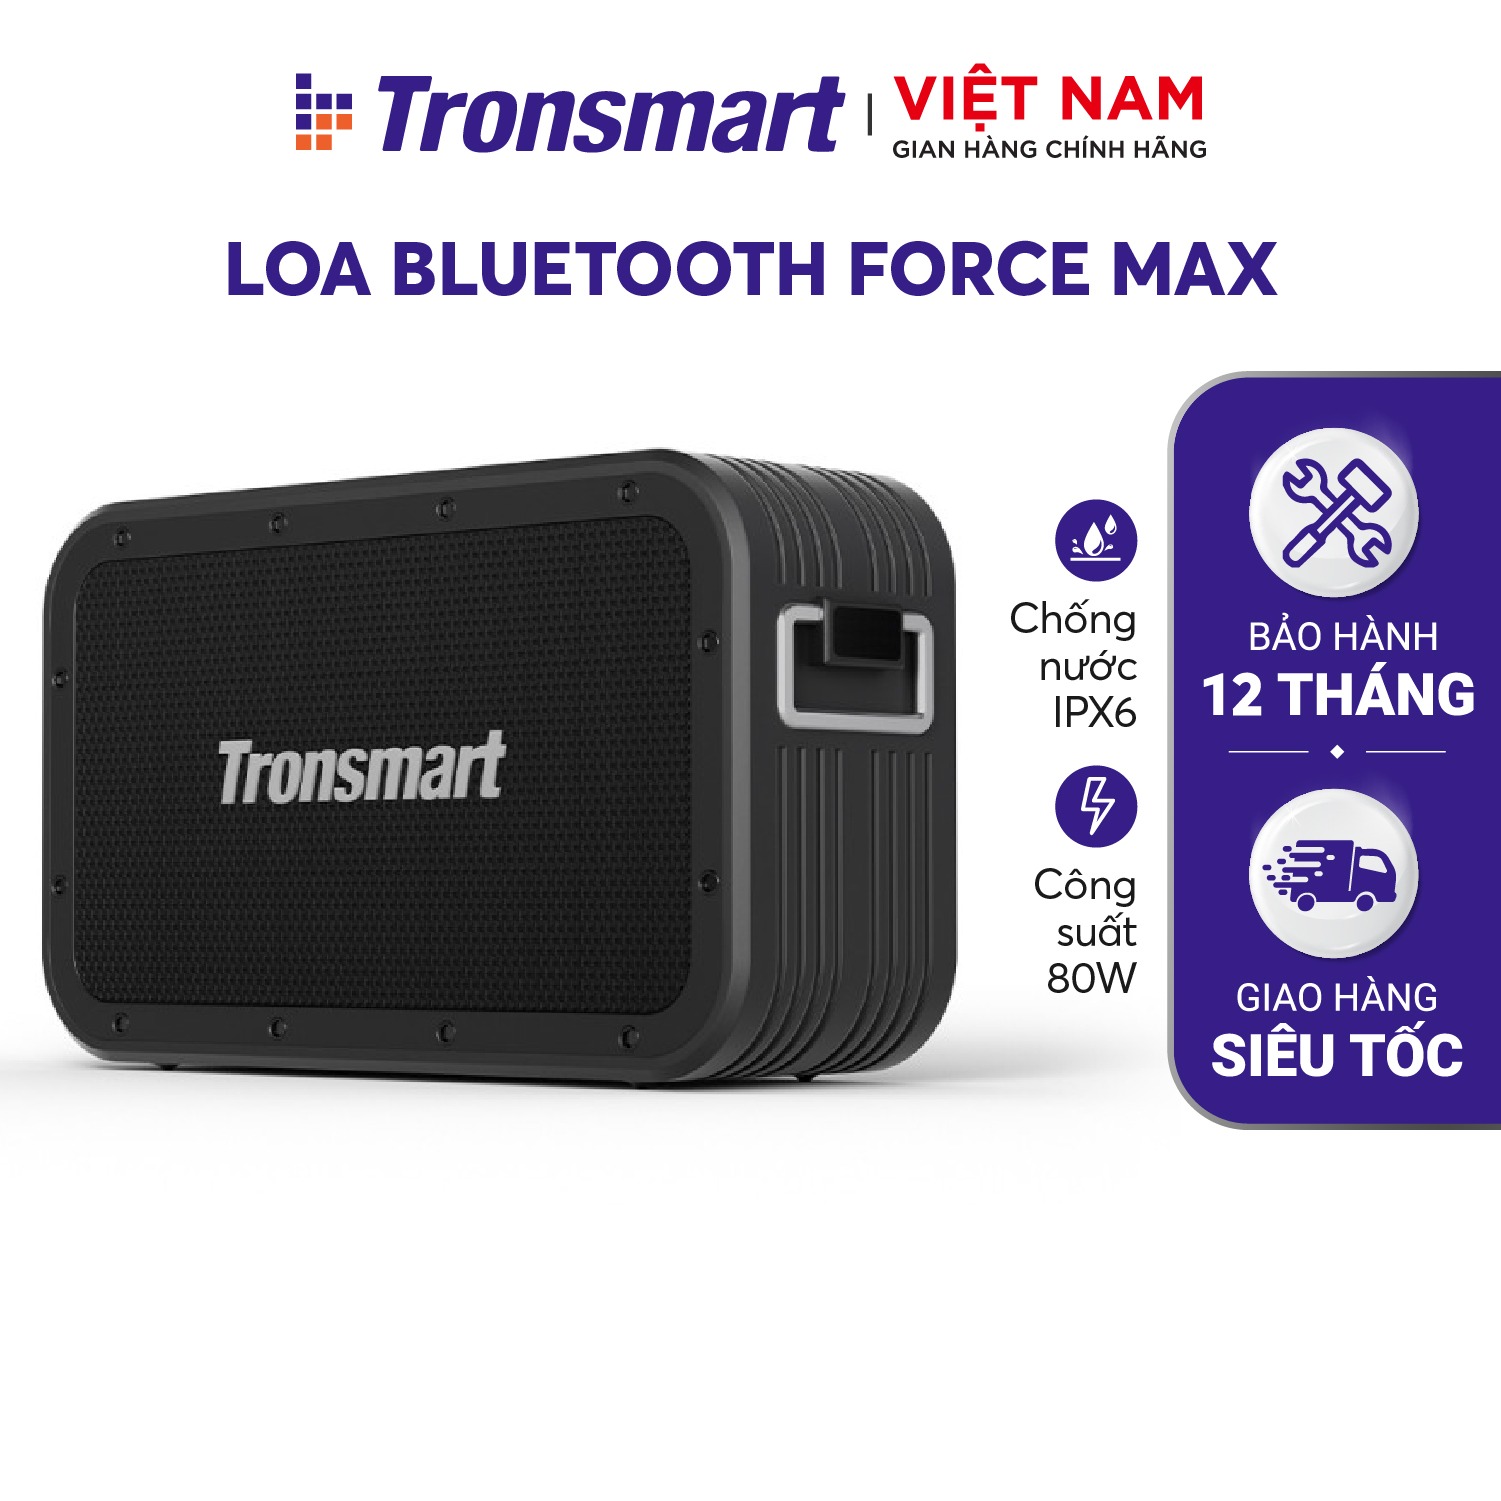 Loa Bluetooth 5.0 Tronsmart Force Max Công suất 80W, Chống thấm nước IPX6 - Thời gian 13 giờ chơi nhạc - Hàng phân phối chính hãng - Bảo hành 12 tháng